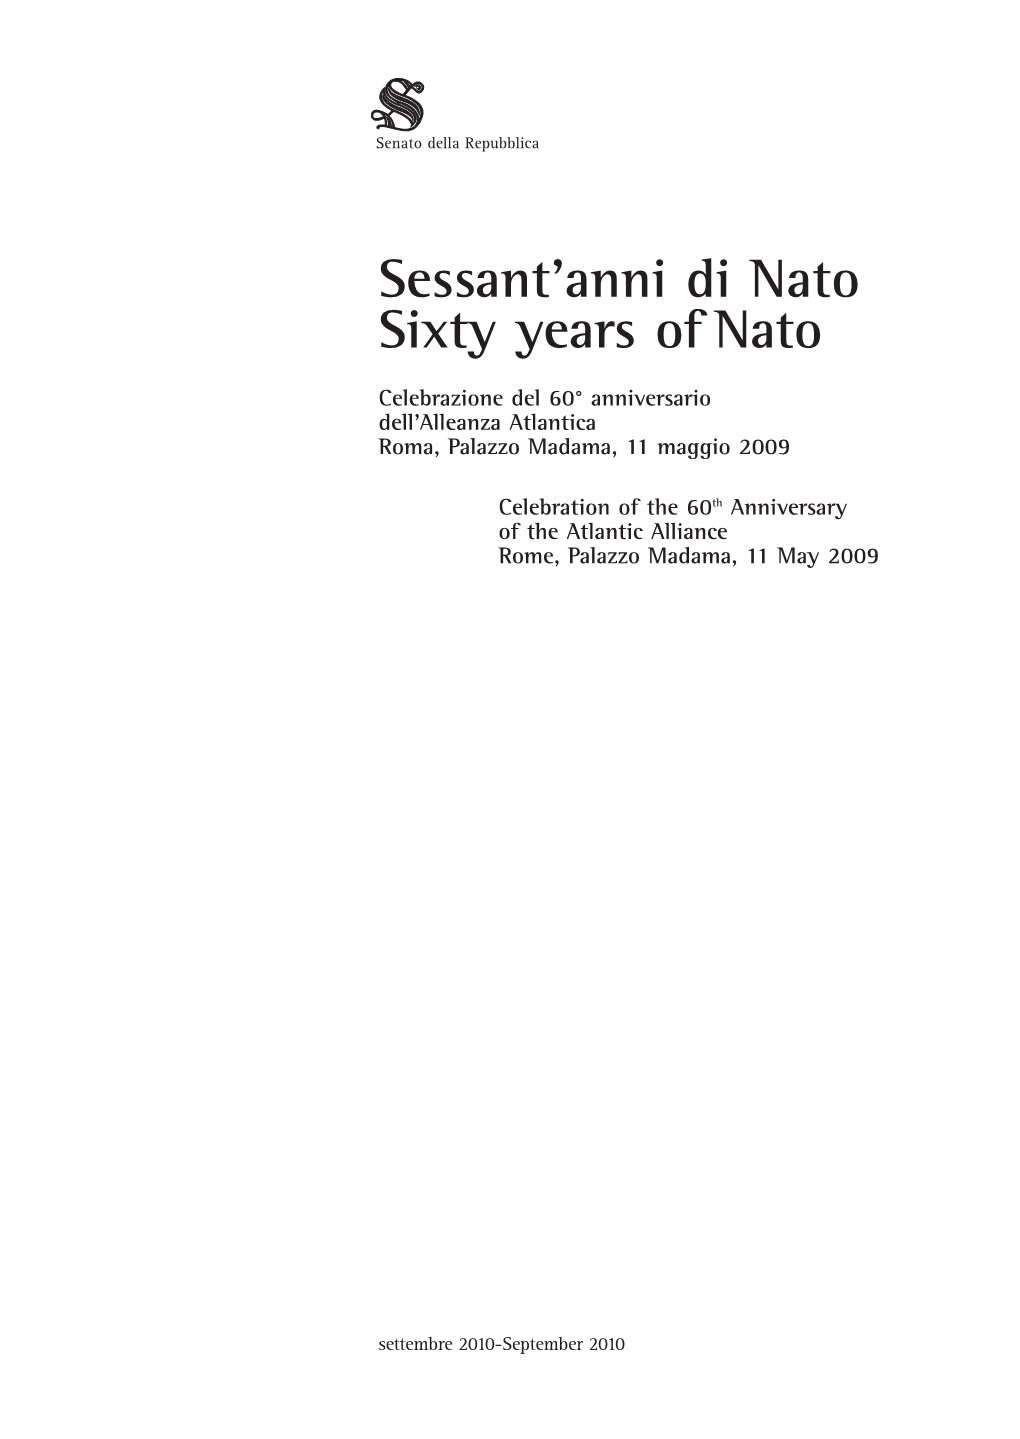 Sessant'anni Di Nato Sixty Years of Nato